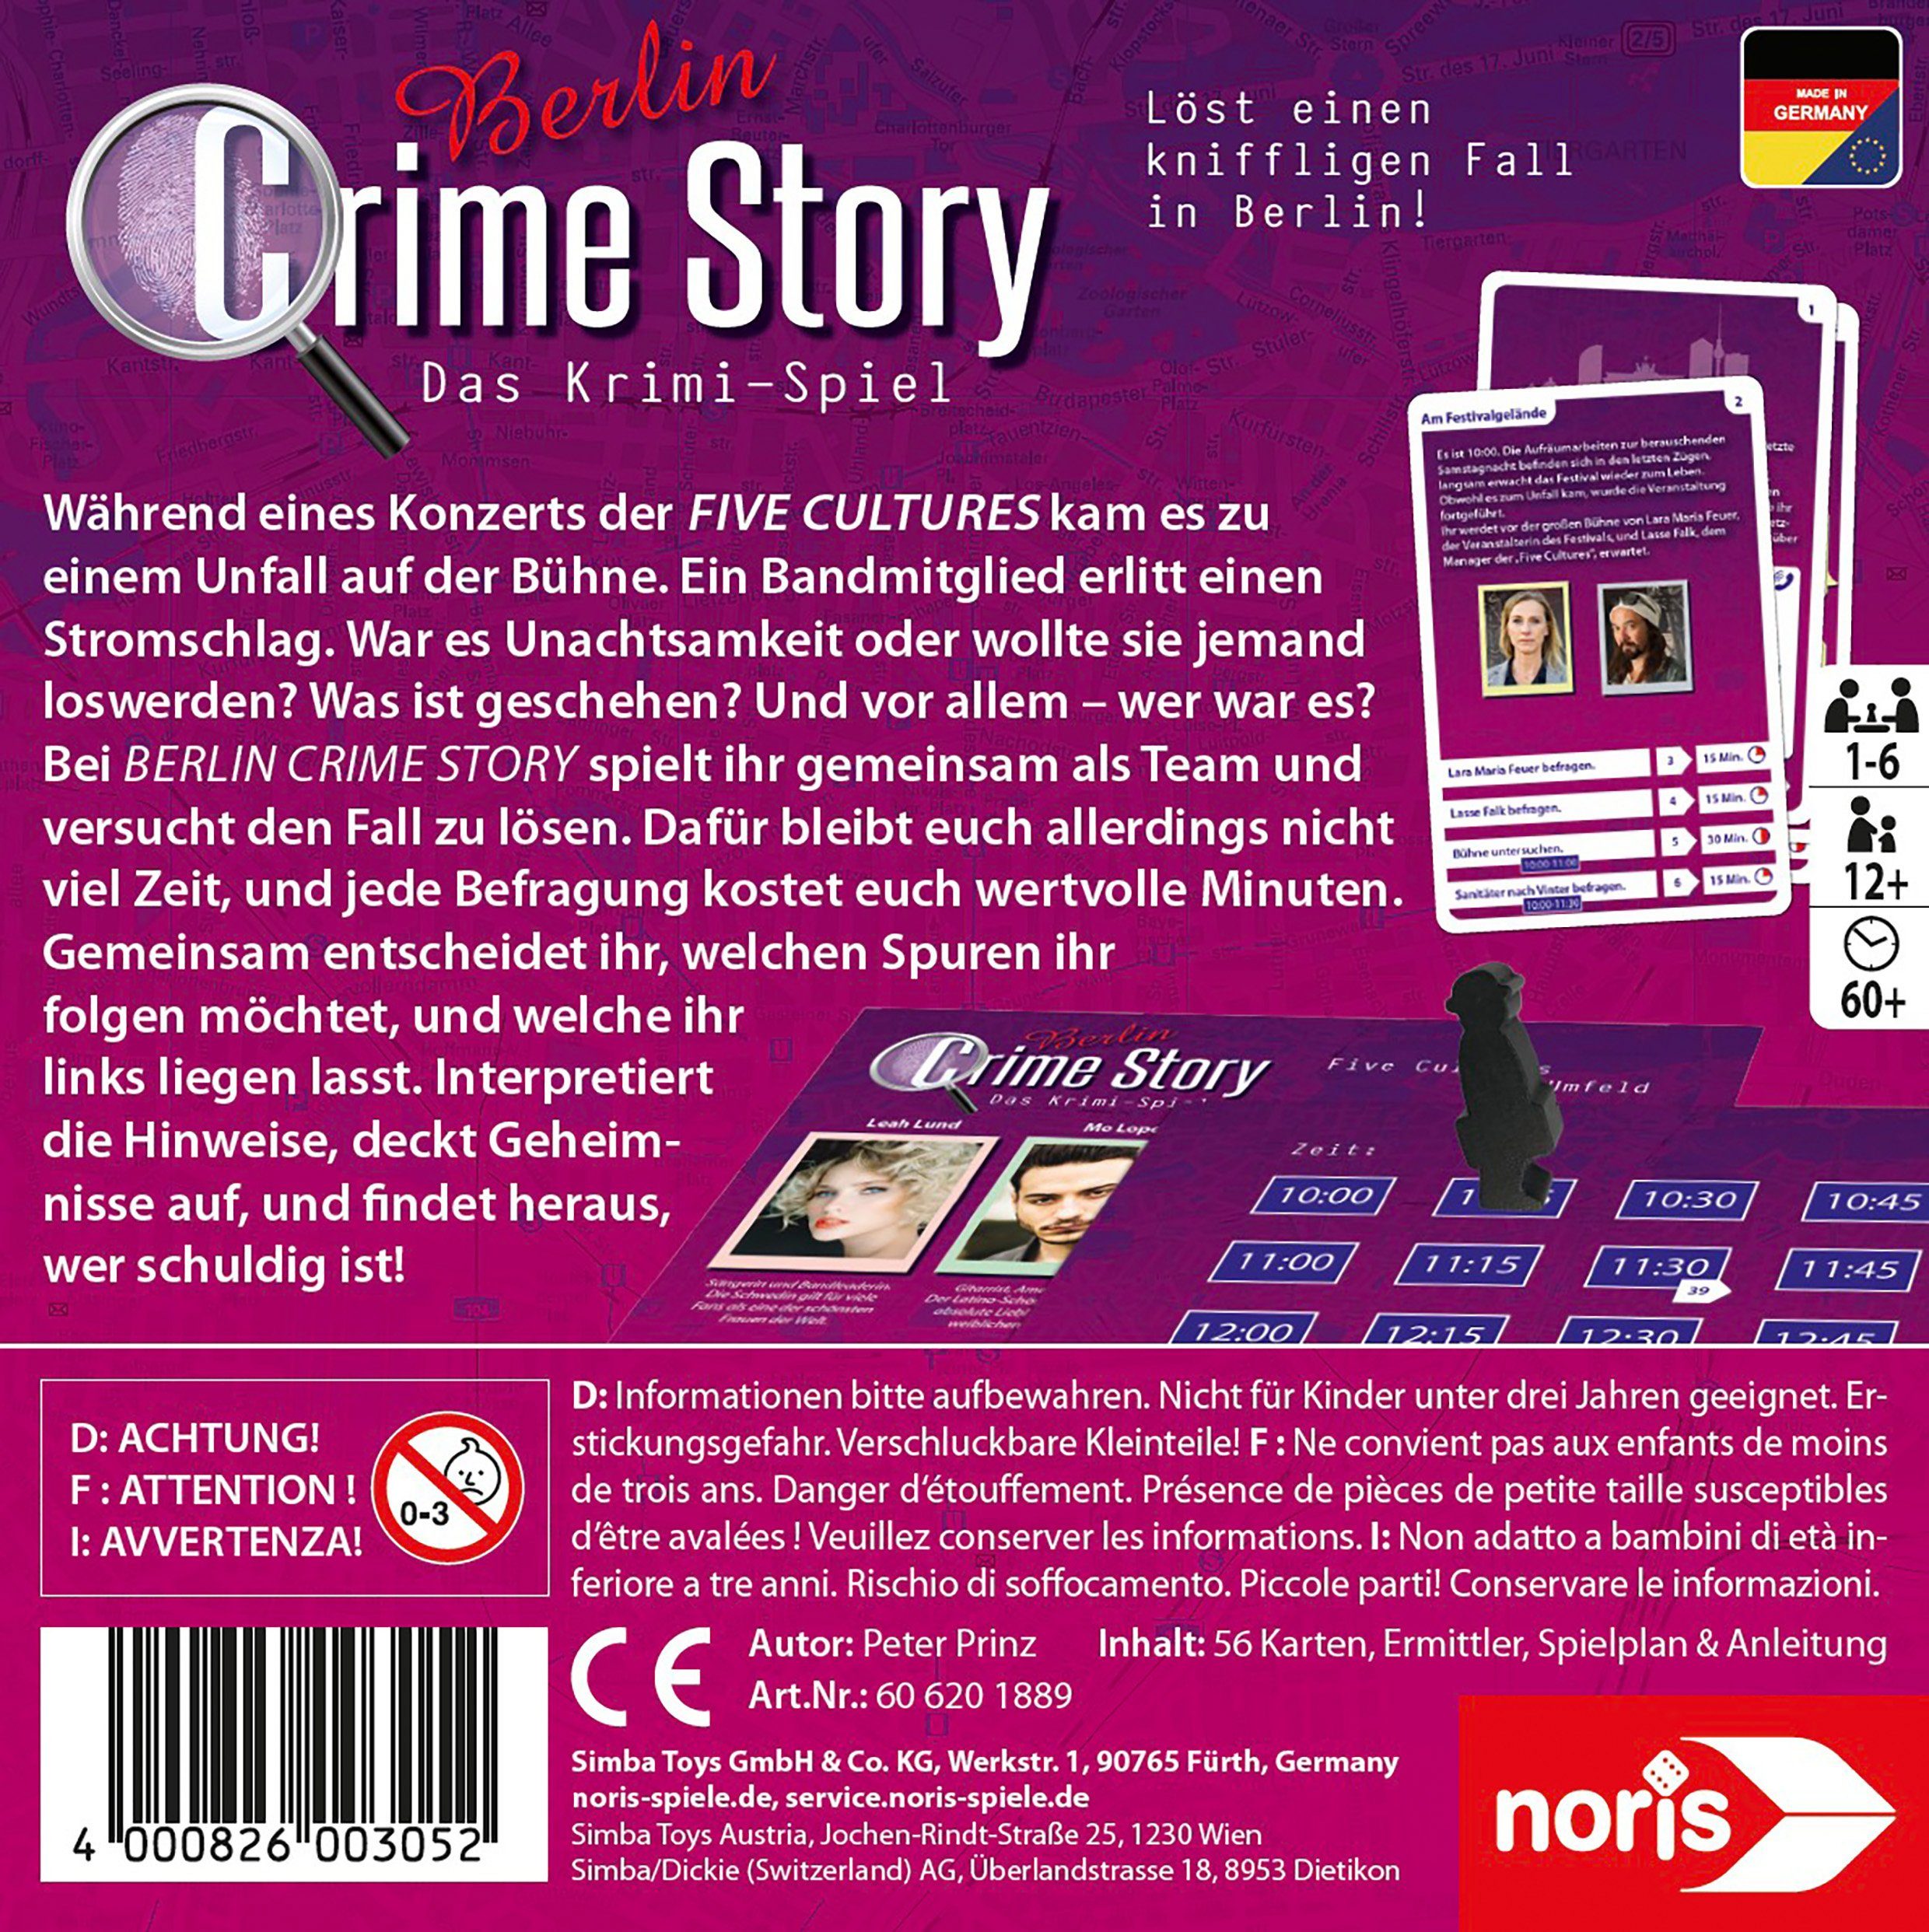 Spiel, Story Made Berlin, Germany Crime - in Noris